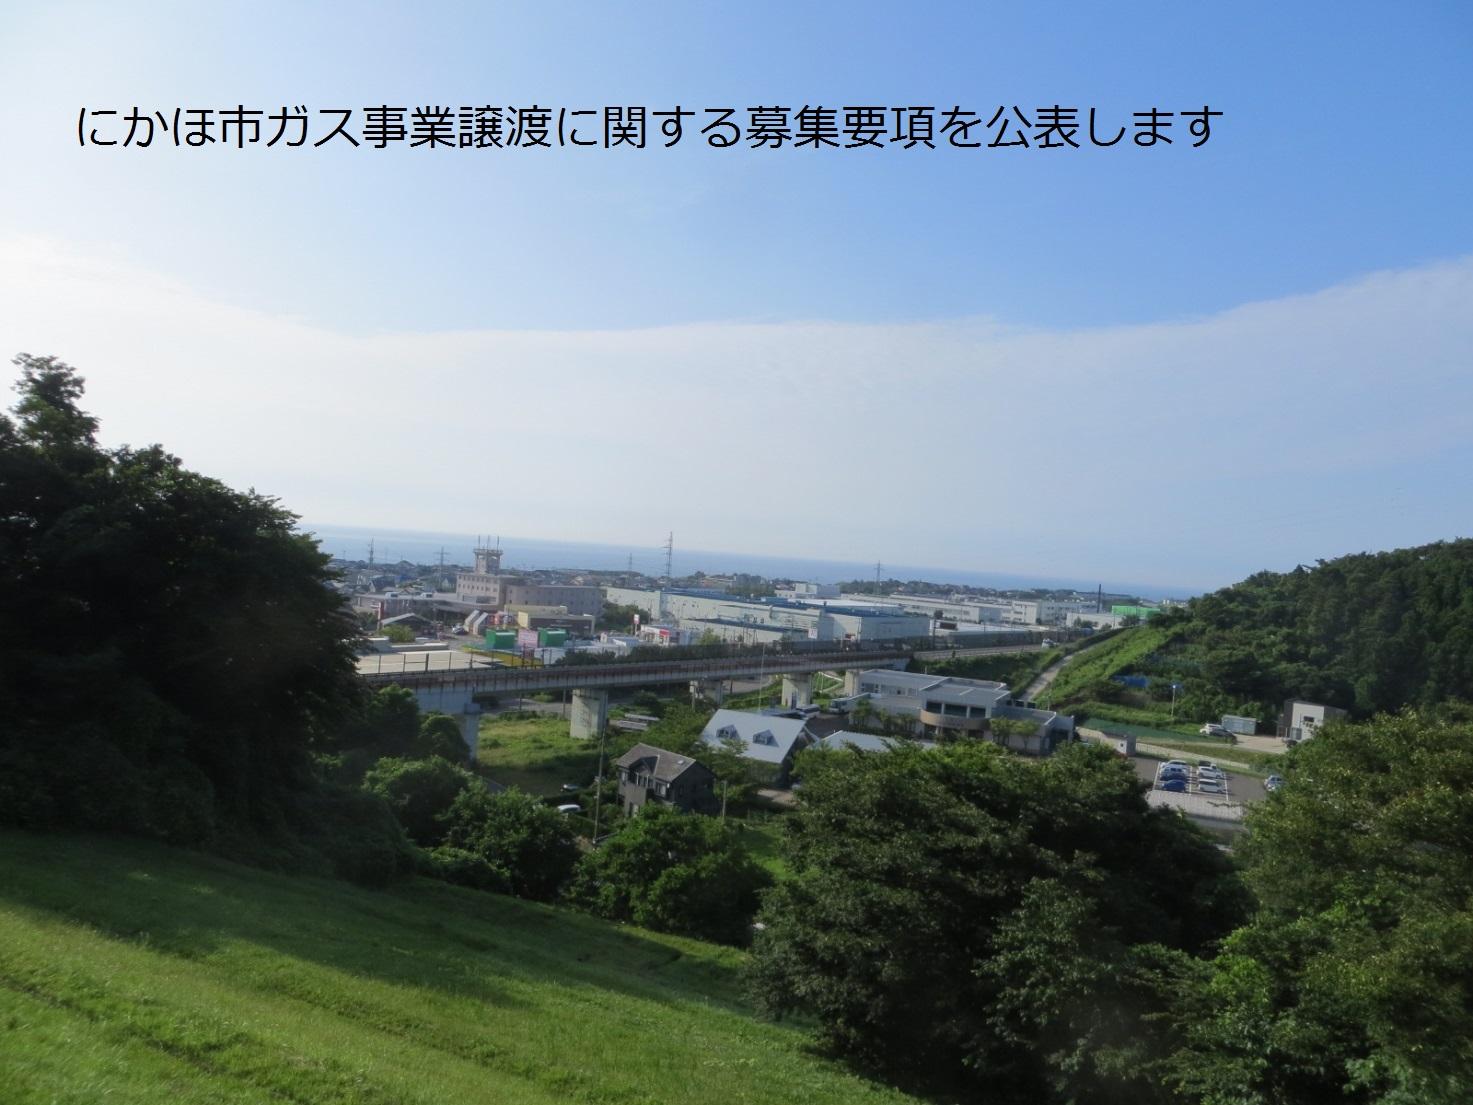 遠くに海が見える緑の多い丘から撮影した街並みの写真